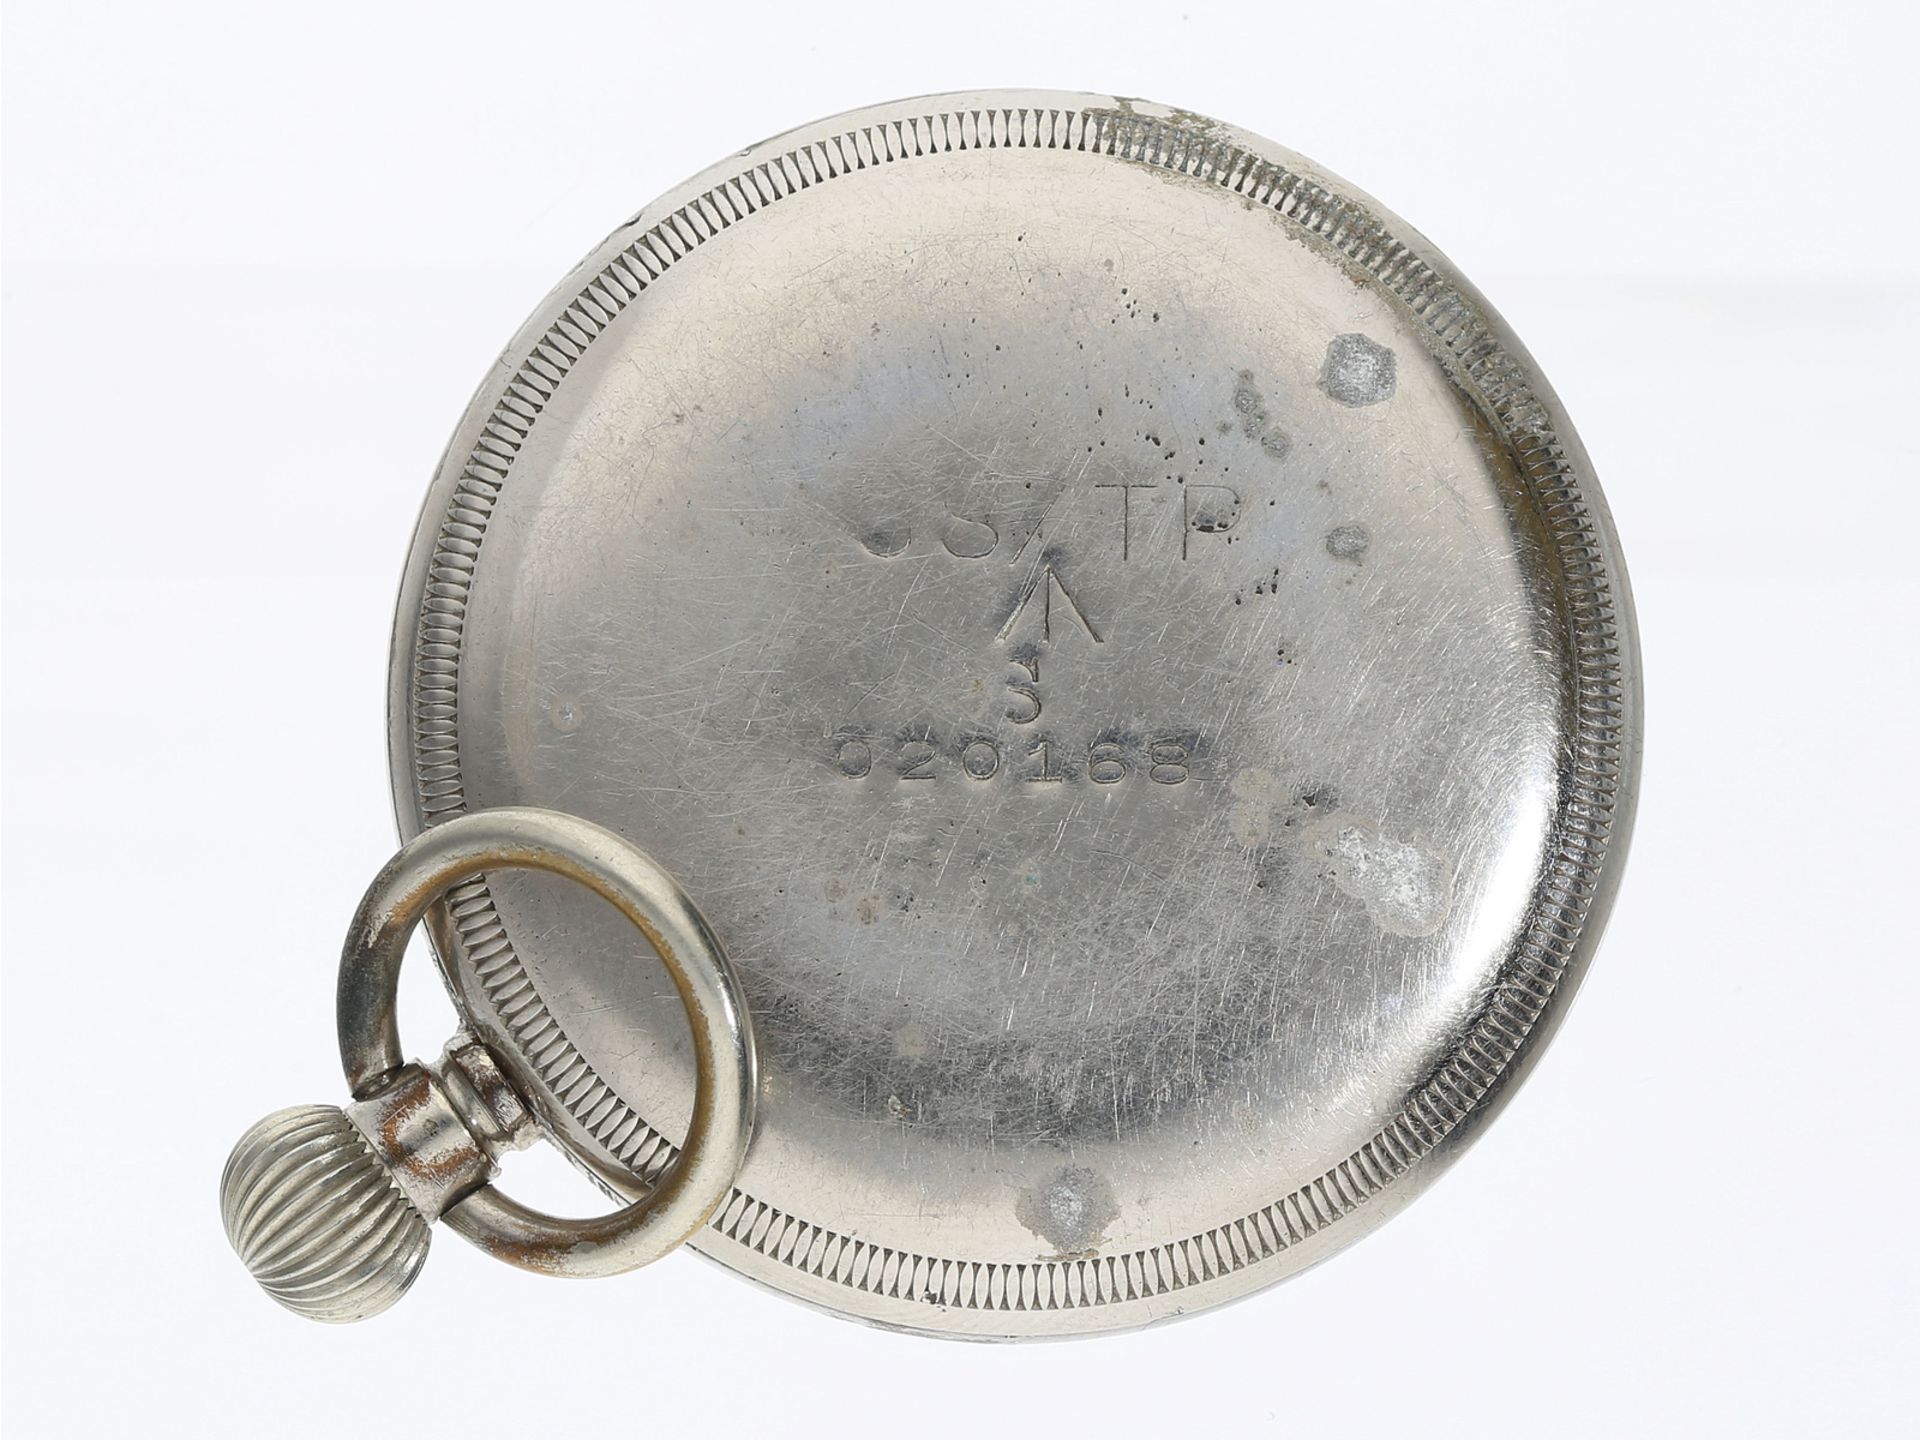 Taschenuhr: militärische Taschenuhr der Marke Revue, britischer Militäreinsatz, 40er-Jahre - Image 2 of 3